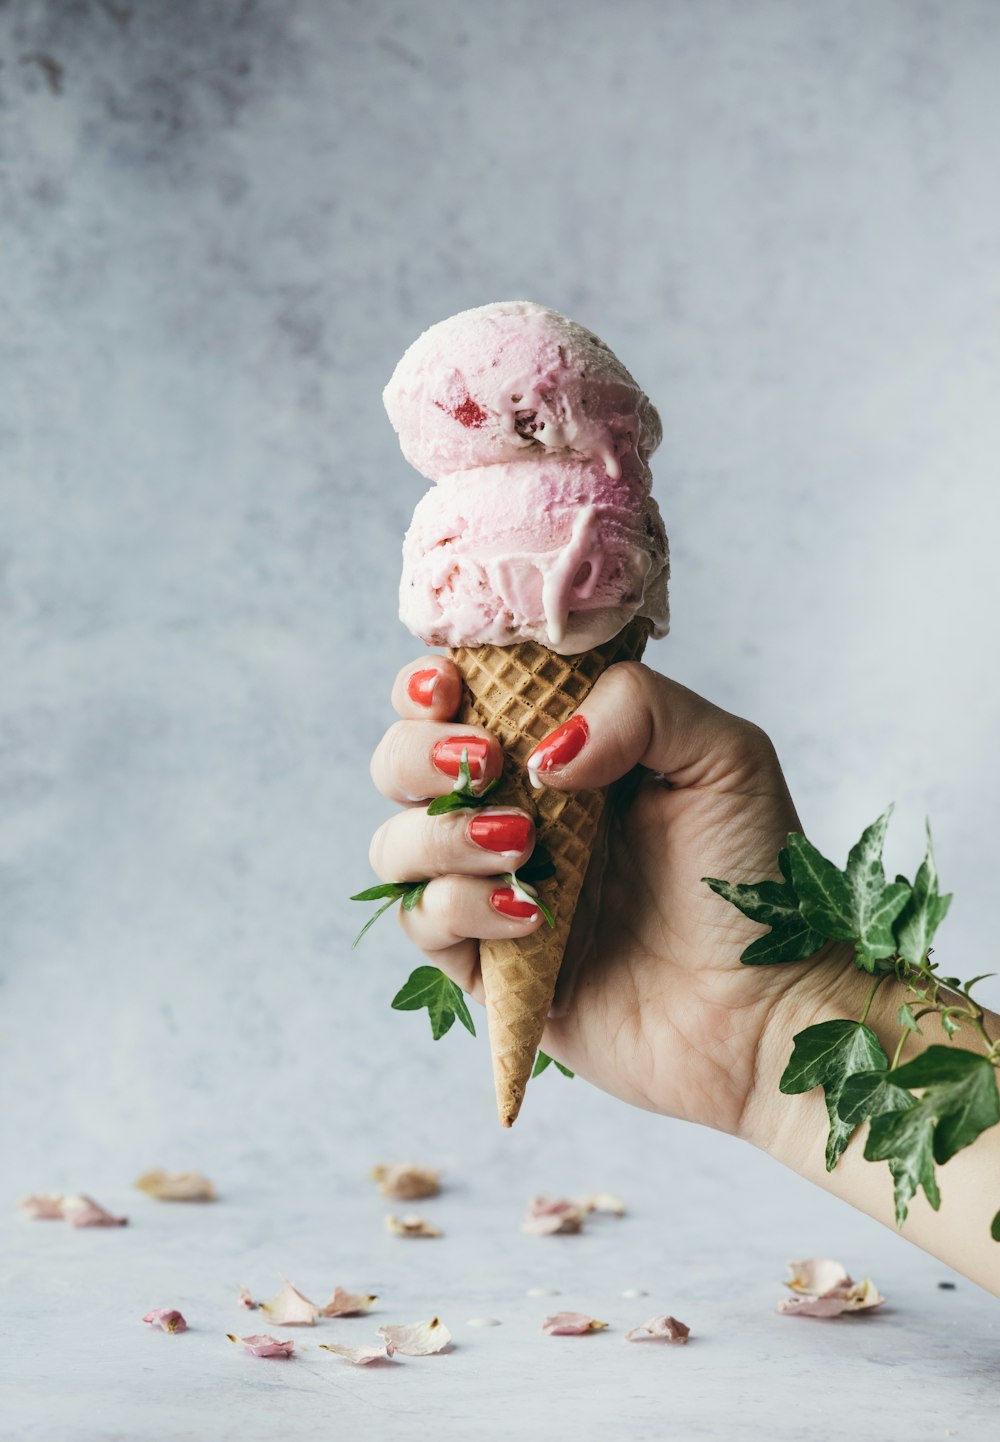 strawberry ice cream on a cone